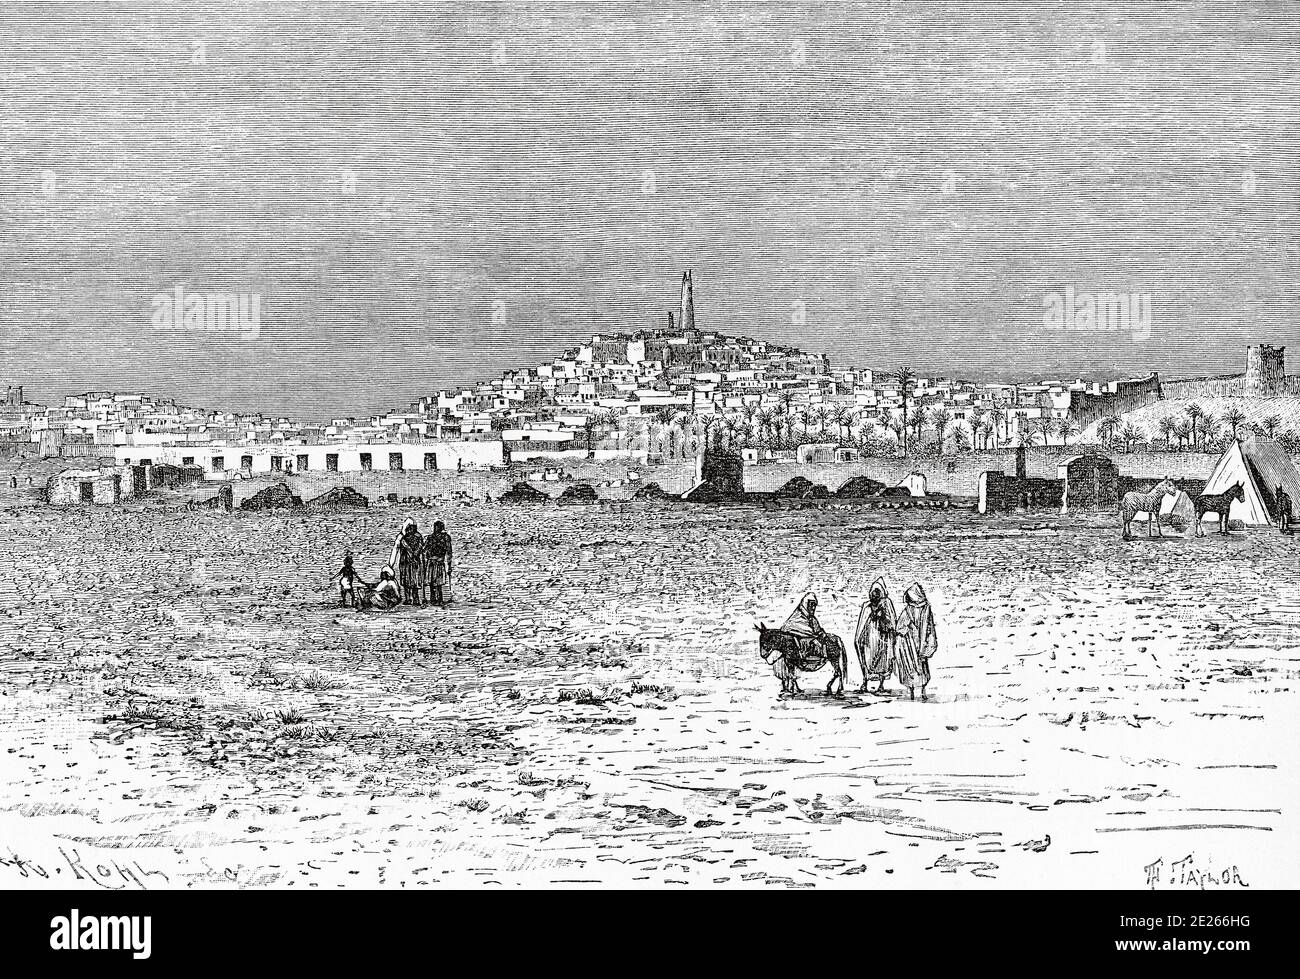 Vista De Ghardaia, Argelia. Norte De África. Antigua ilustración grabada del libro Nueva Geografia Universal de Eliseo Reclus 1889 Foto de stock